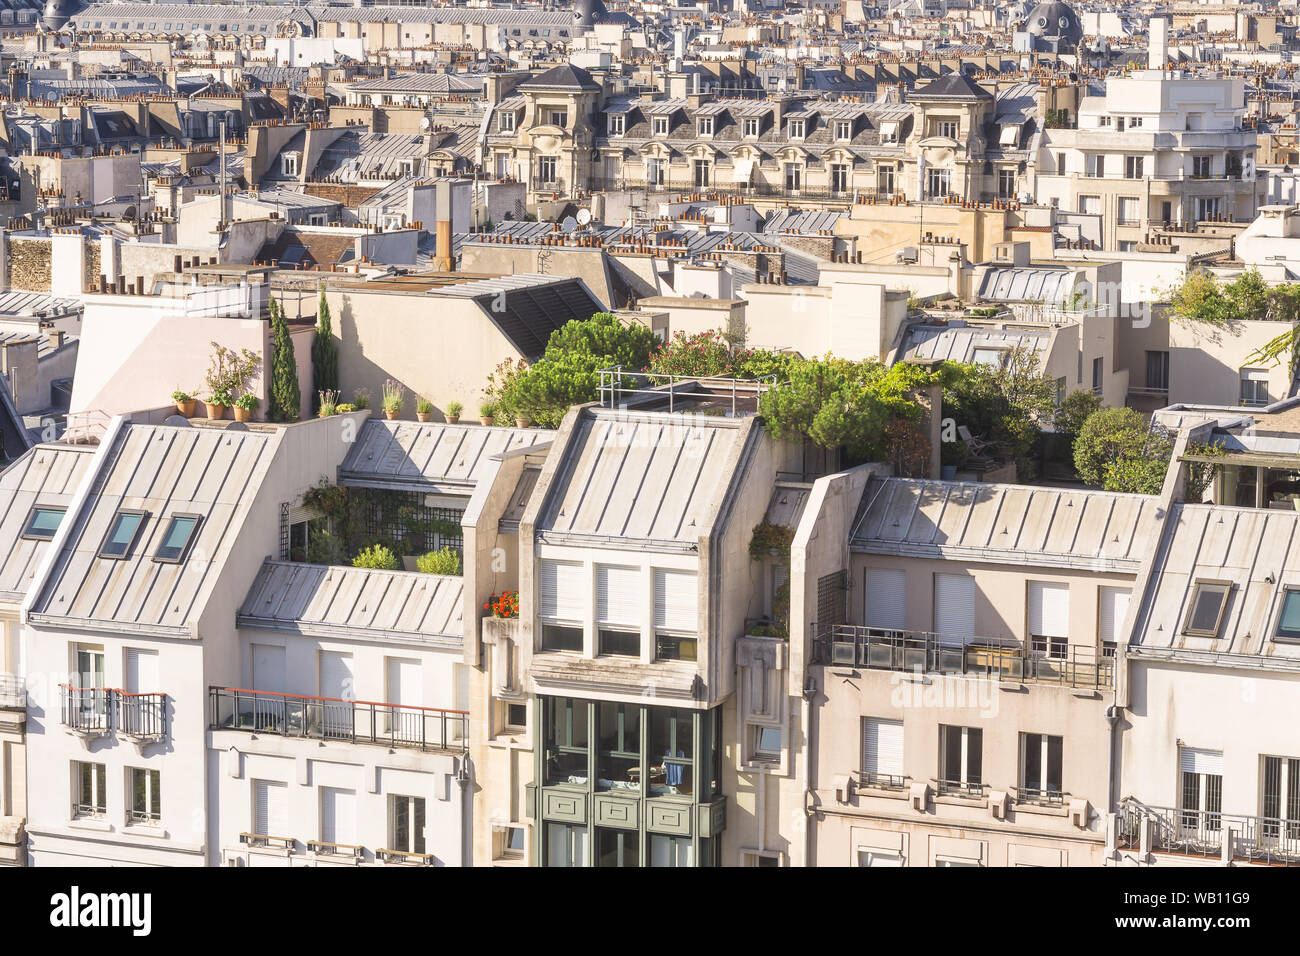 Paris Dachbegrünung - Luftbild des Pariser Dächer an einem Sommernachmittag, Frankreich, Europa. Stockfoto